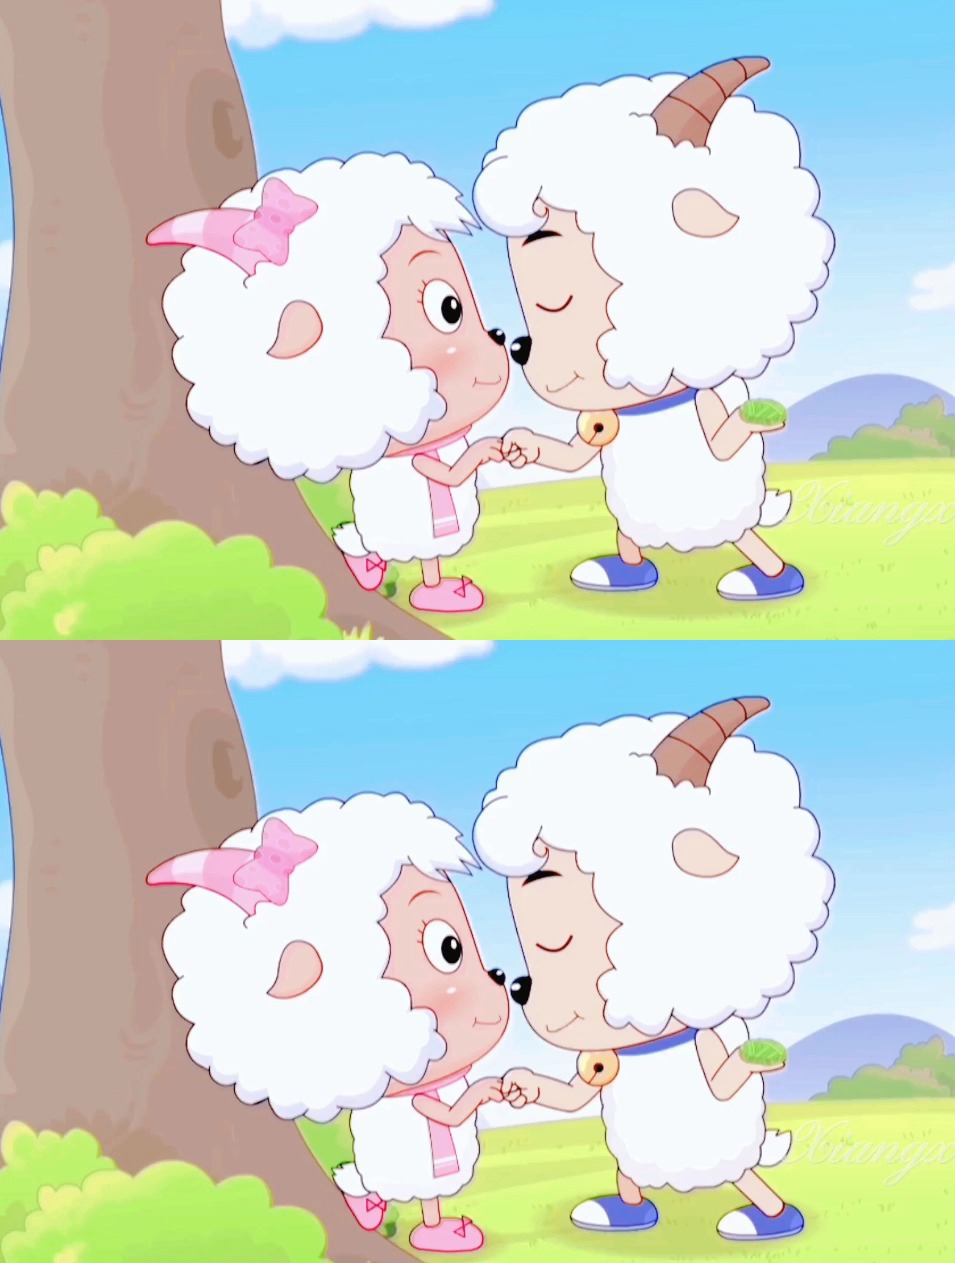 喜羊羊和美羊羊 动漫图片